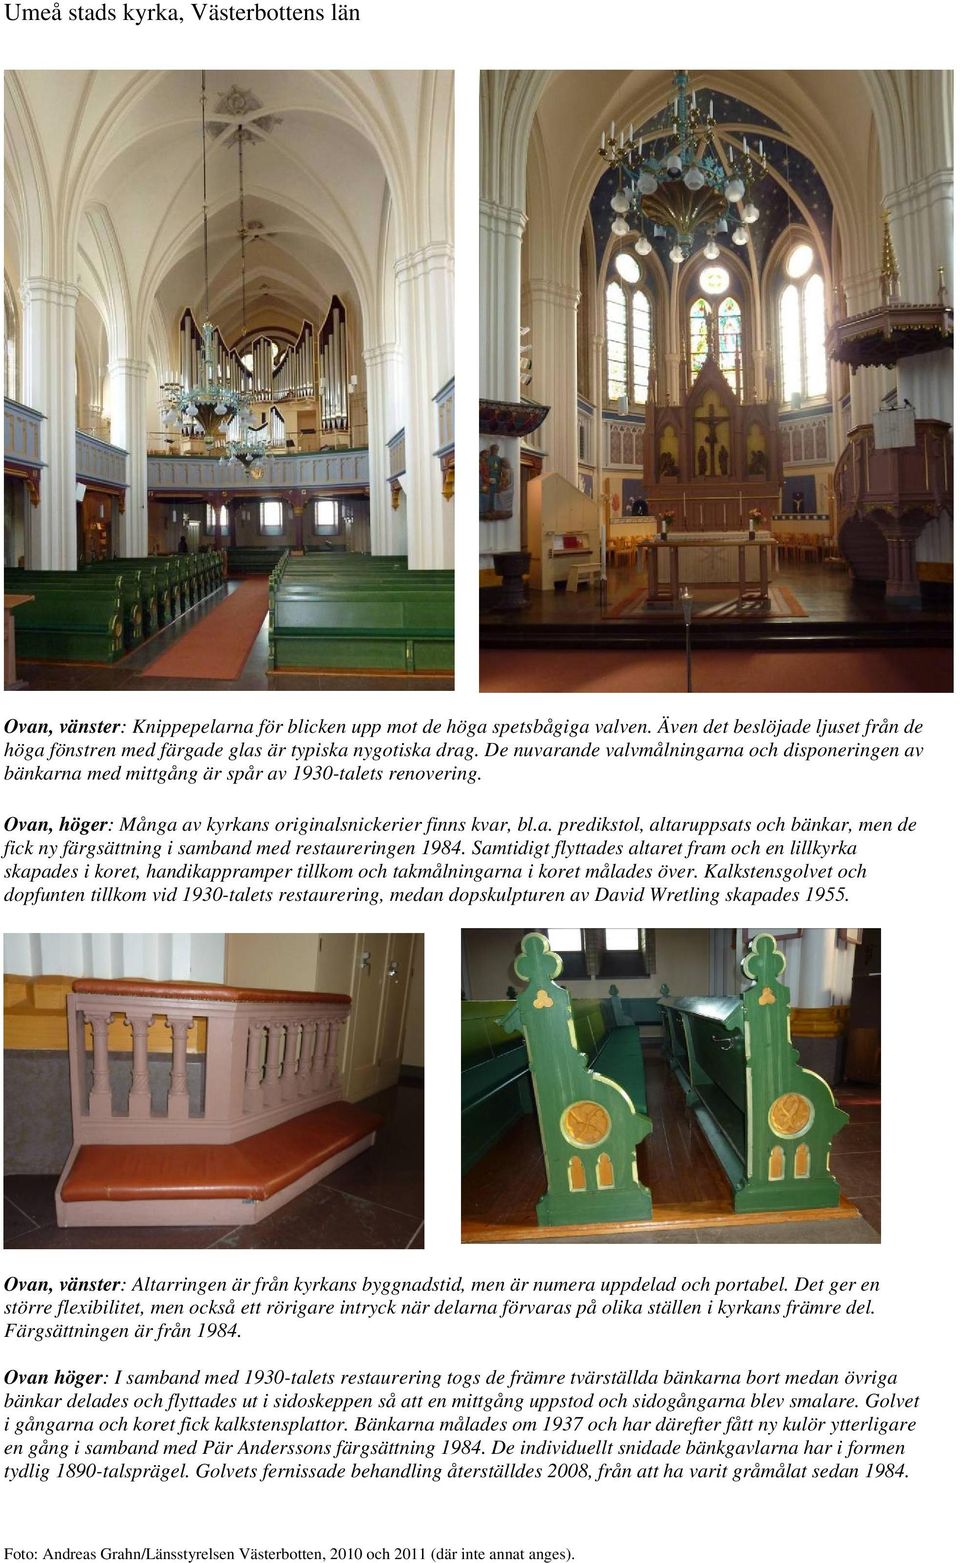 Ovan, höger: Många av kyrkans originalsnickerier finns kvar, bl.a. predikstol, altaruppsats och bänkar, men de fick ny färgsättning i samband med restaureringen 1984.